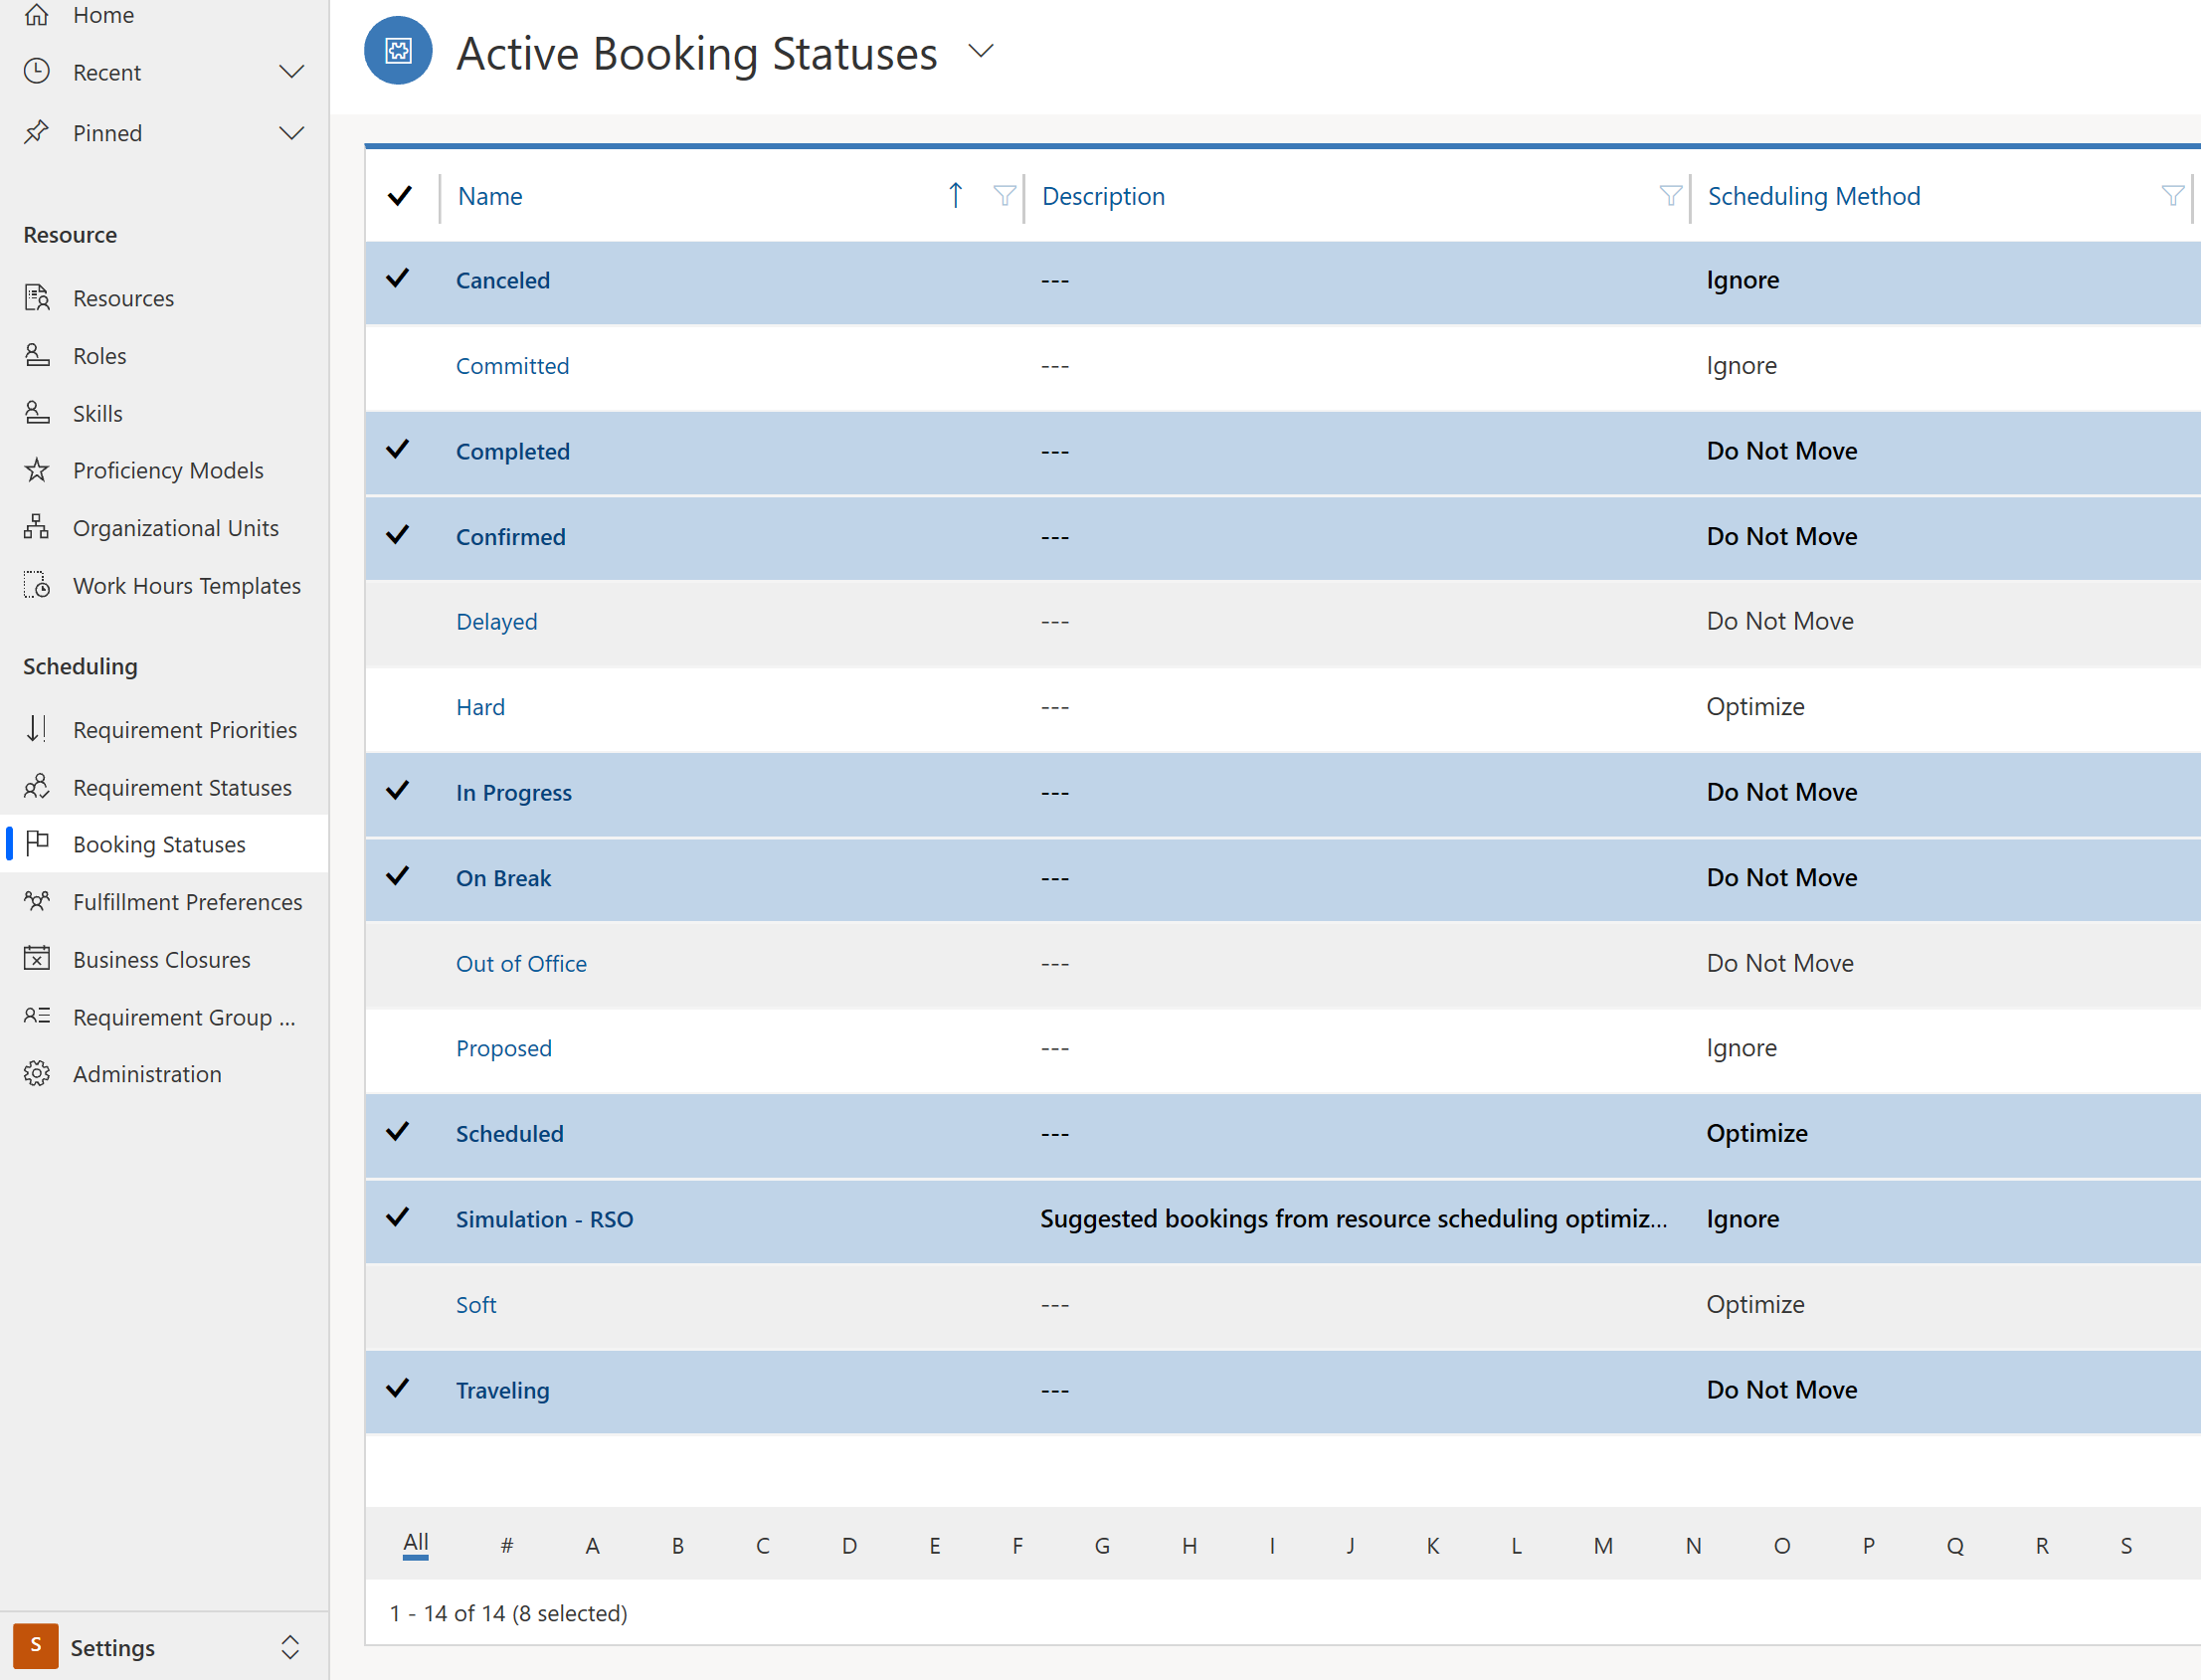 Skärmbild av en lista med bokningsstatus mappade till statusvärden för Resource Scheduling Optimization.